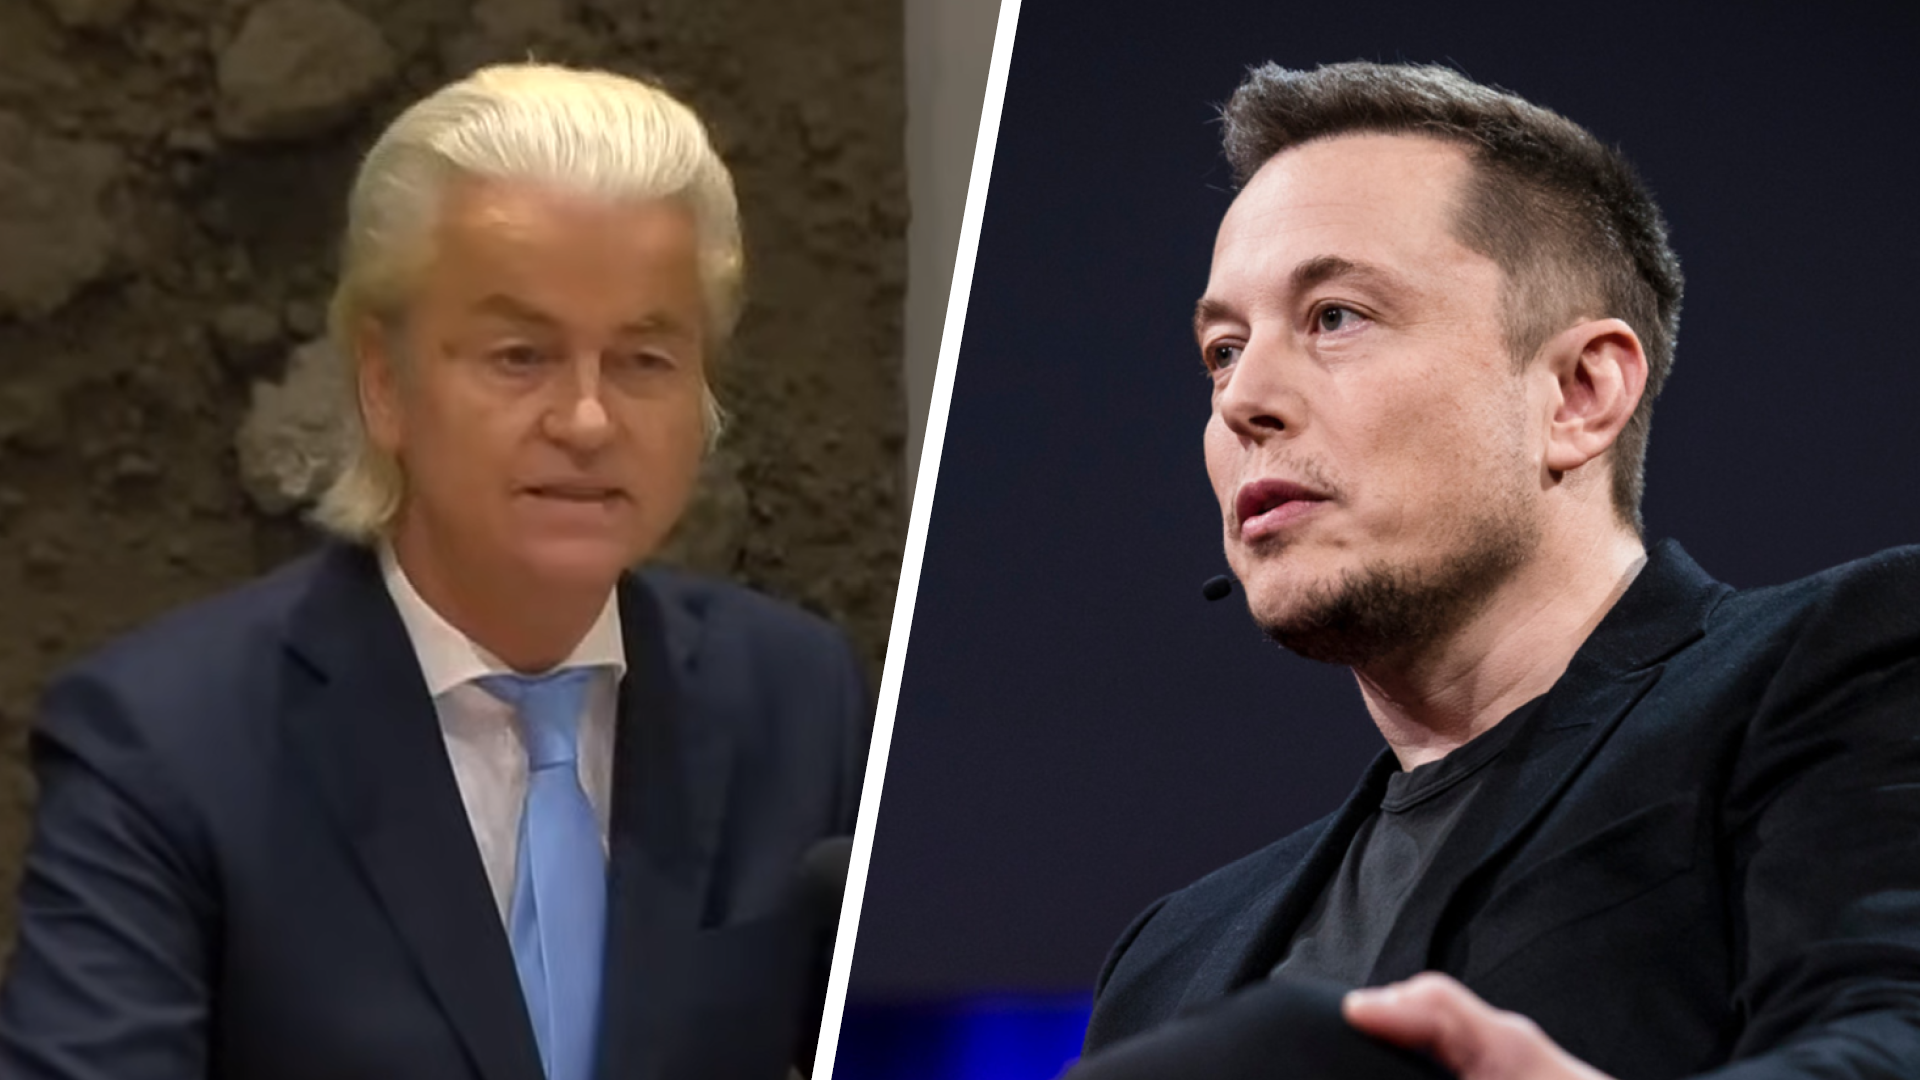 Elon Musk en Geert Wilders kruisen degens over migratie: “Nederland zal eigenhandig uitsterven”